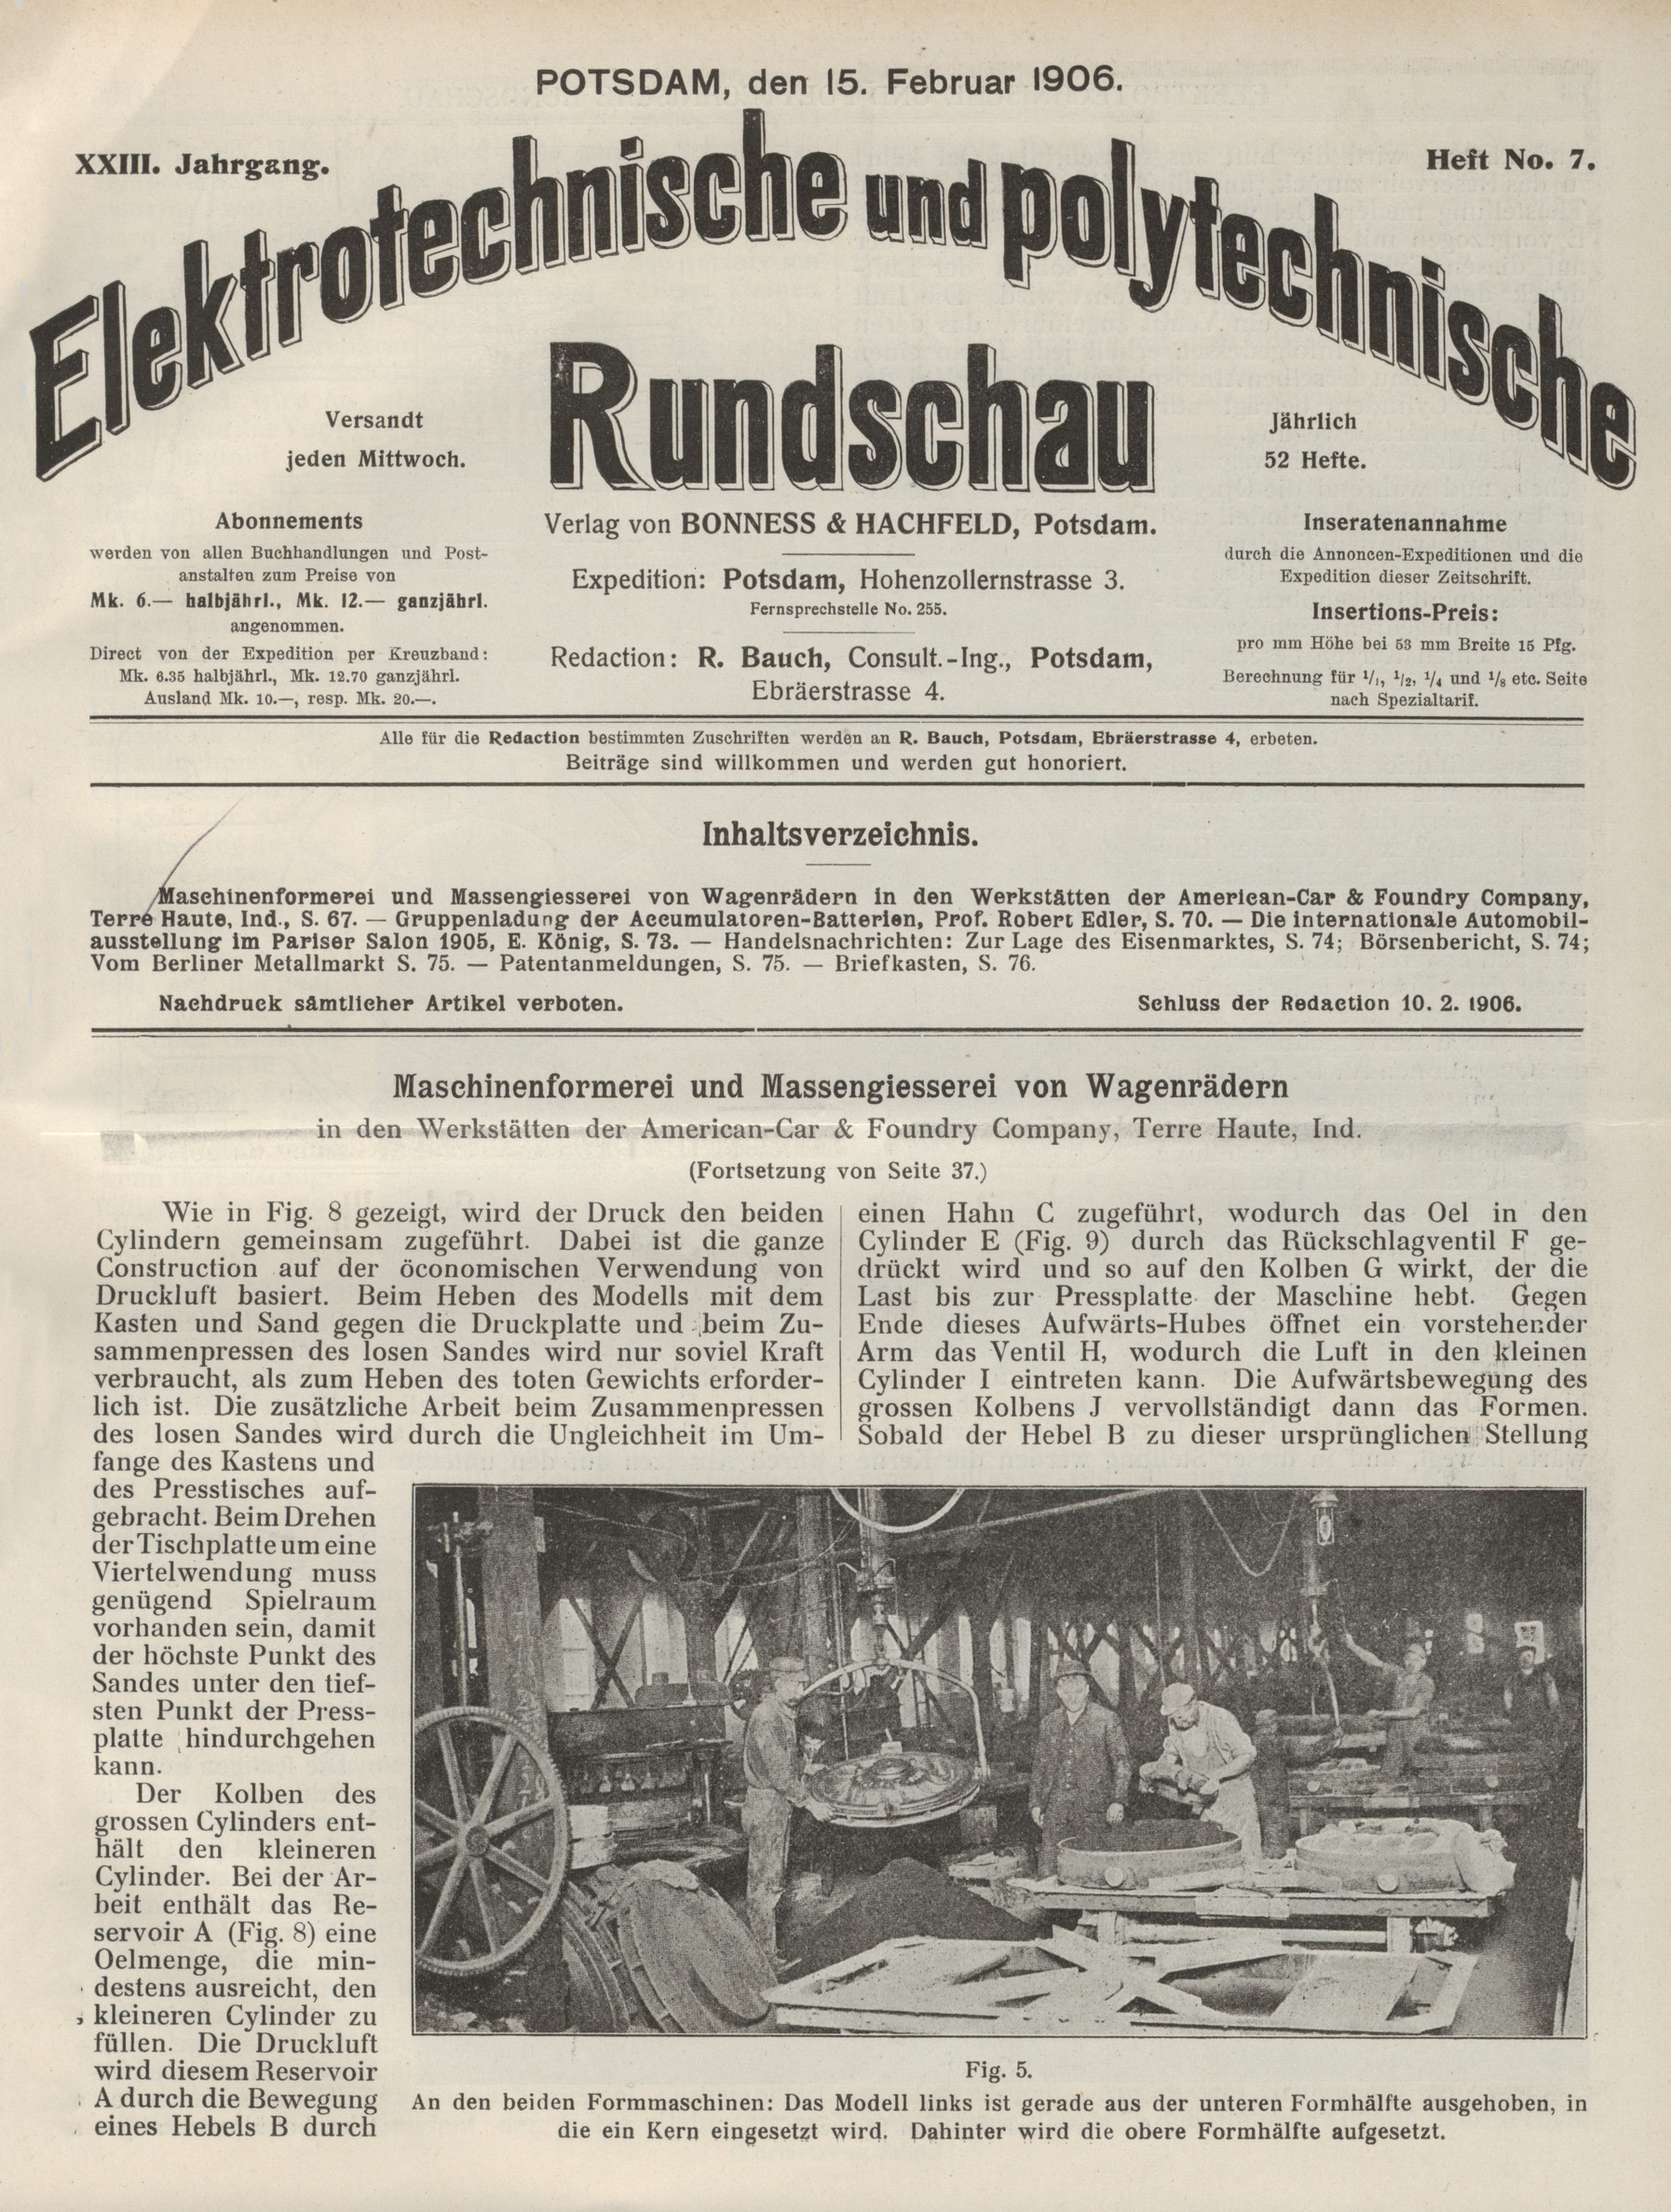 Elektrotechnische und polytechnische Rundschau, XXIII. Jahrgang, Heft No. 7